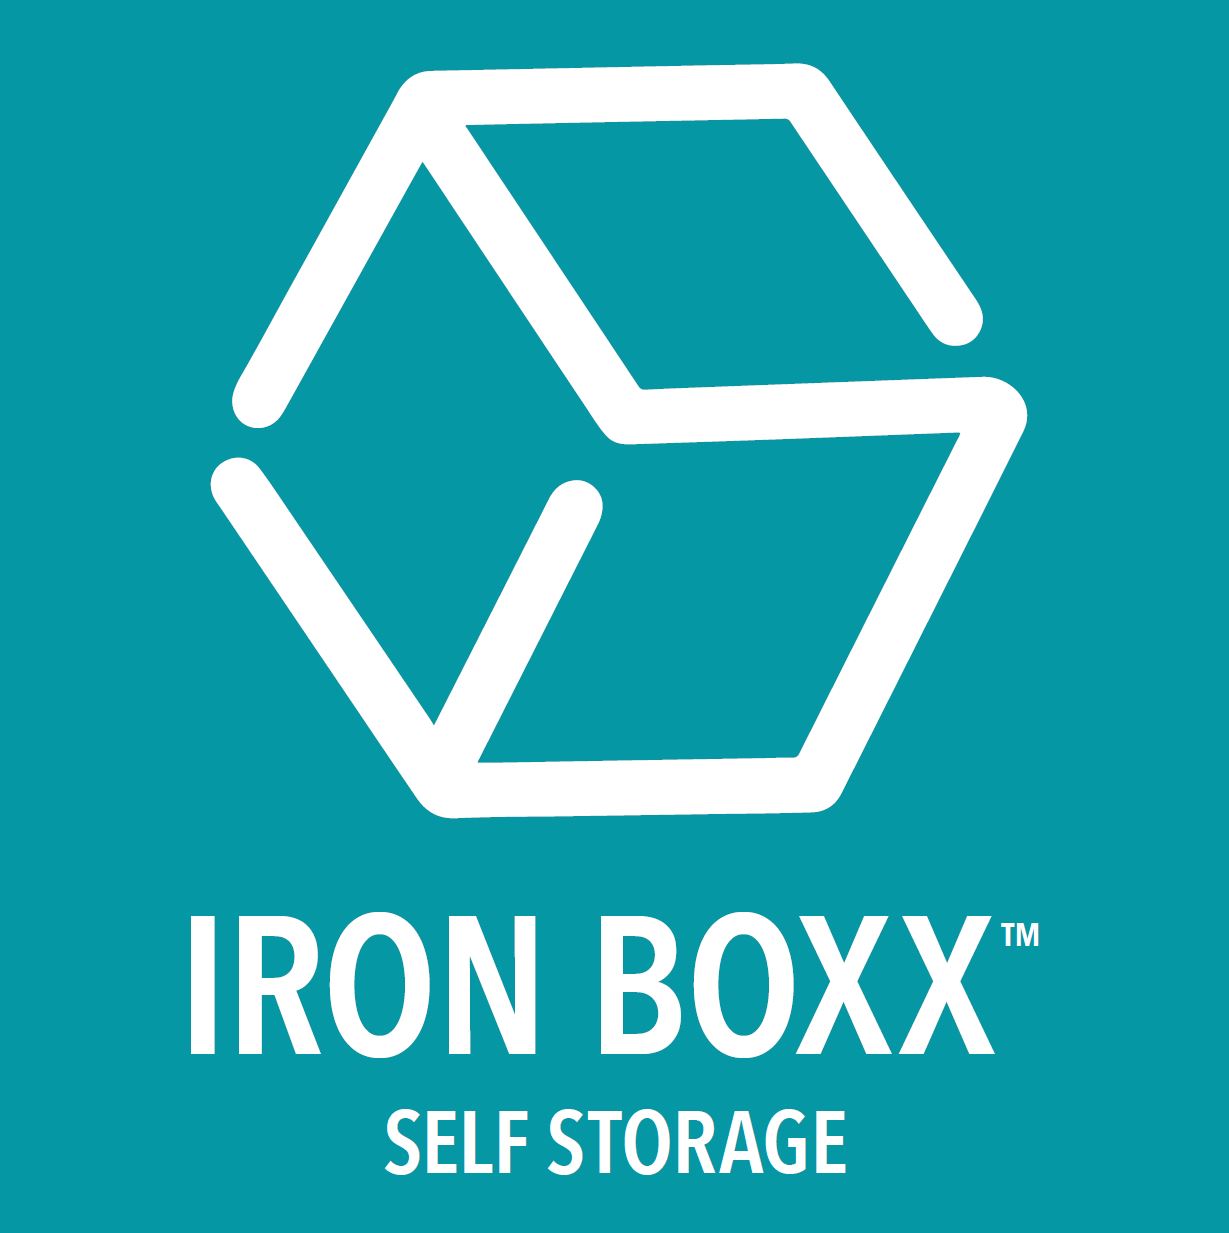 Iron Box Self Storage logo